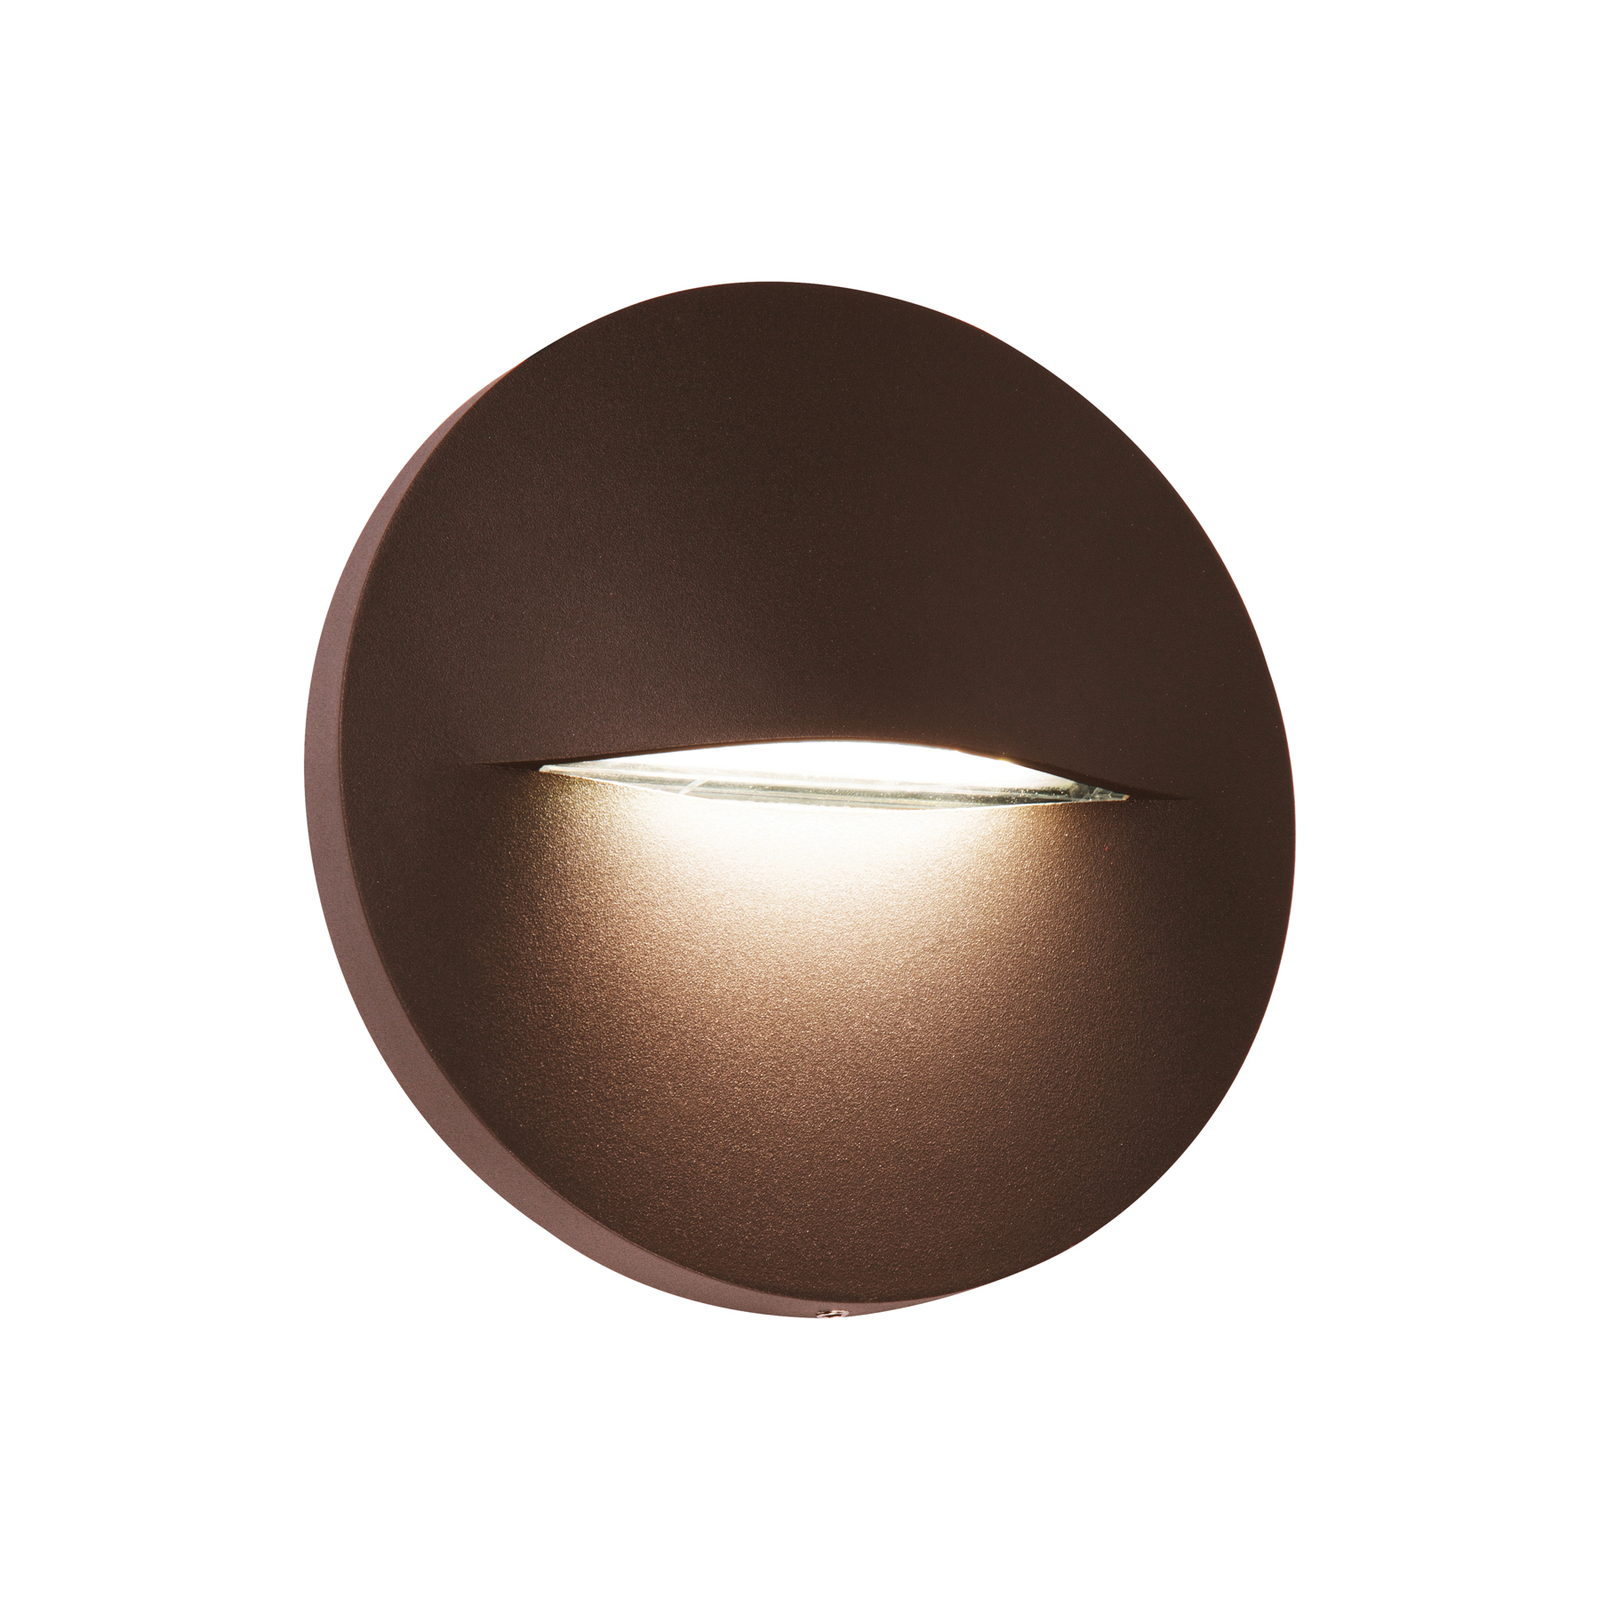 LED utendørs vegglampe Vita, rustbrun, Ø 14 cm